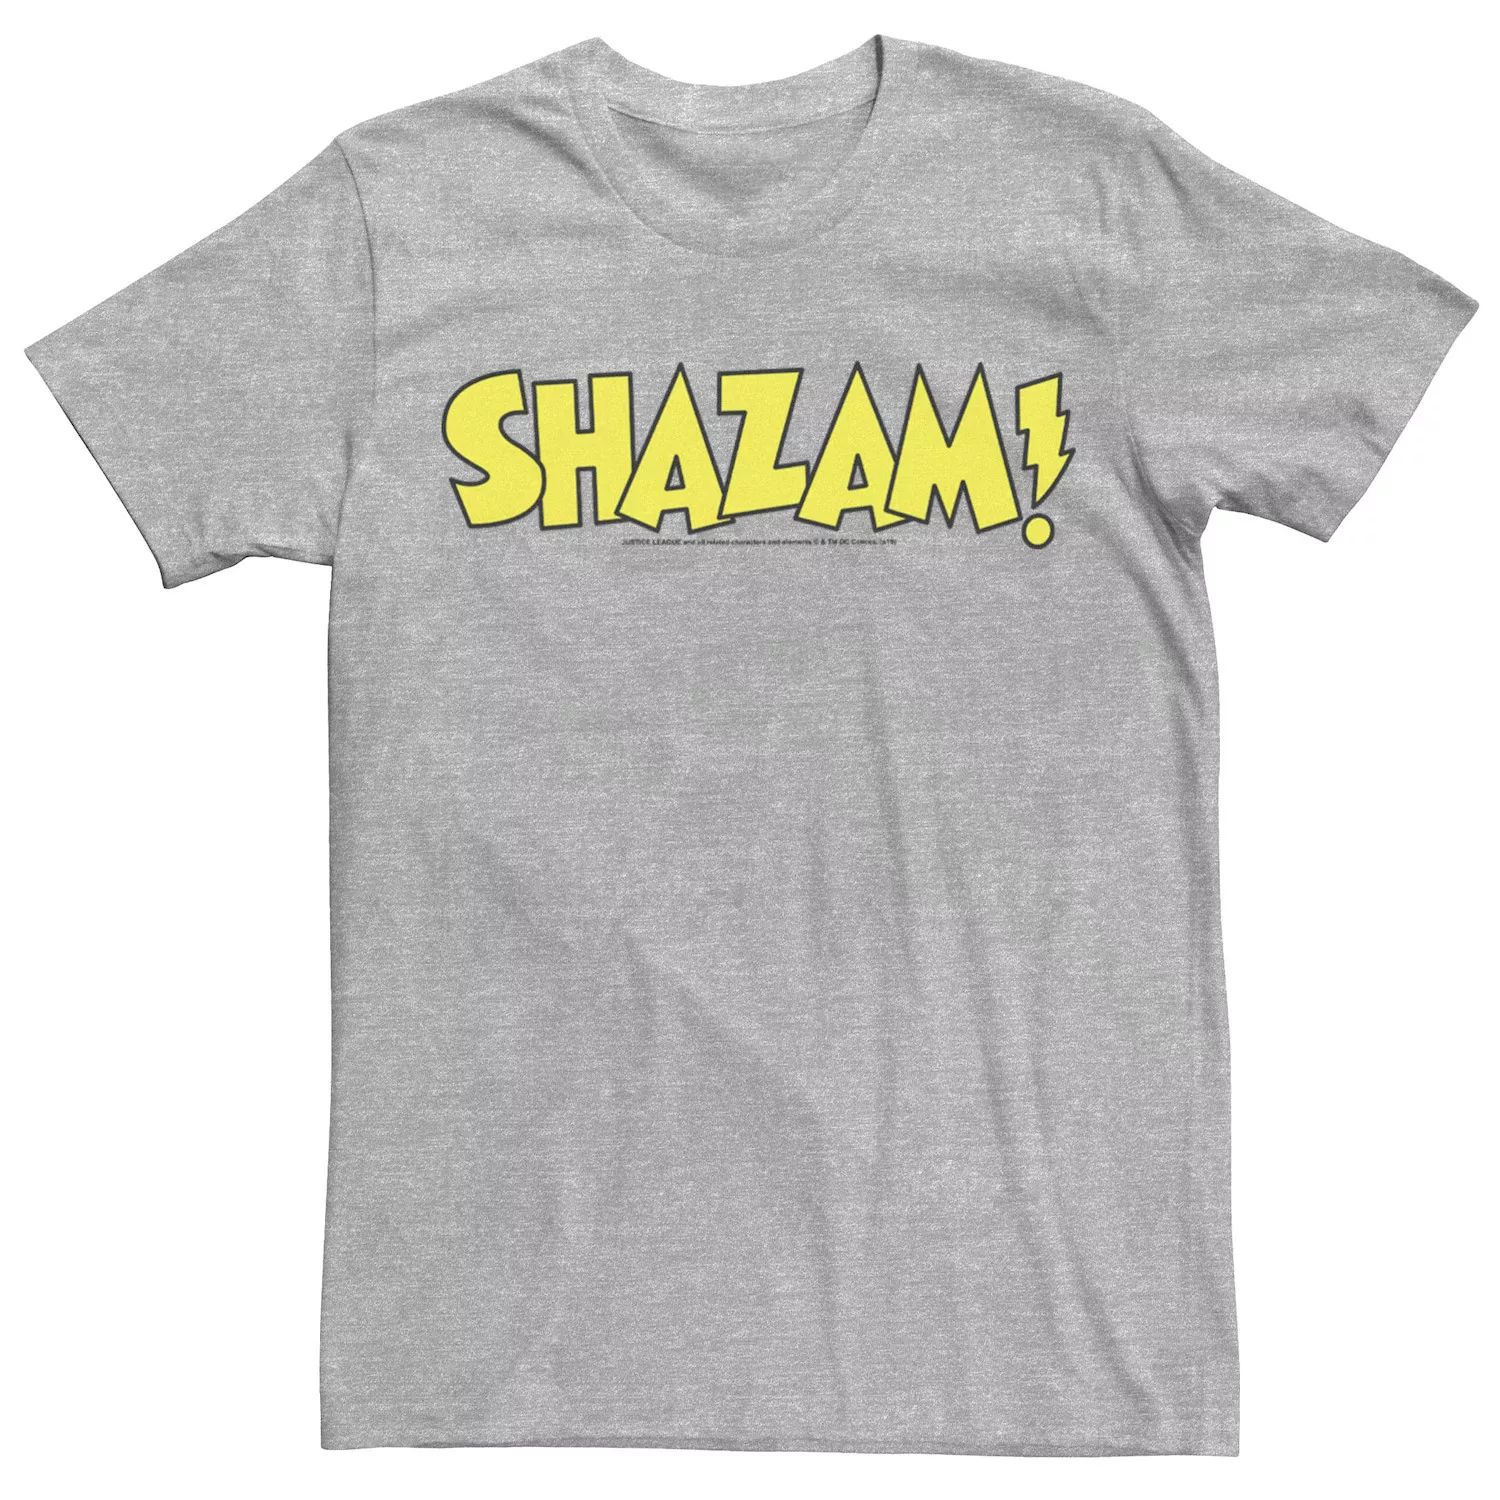 Мужская футболка с жирным текстовым логотипом Shazam DC Comics мужская футболка с текстовым логотипом хищные птицы dc comics